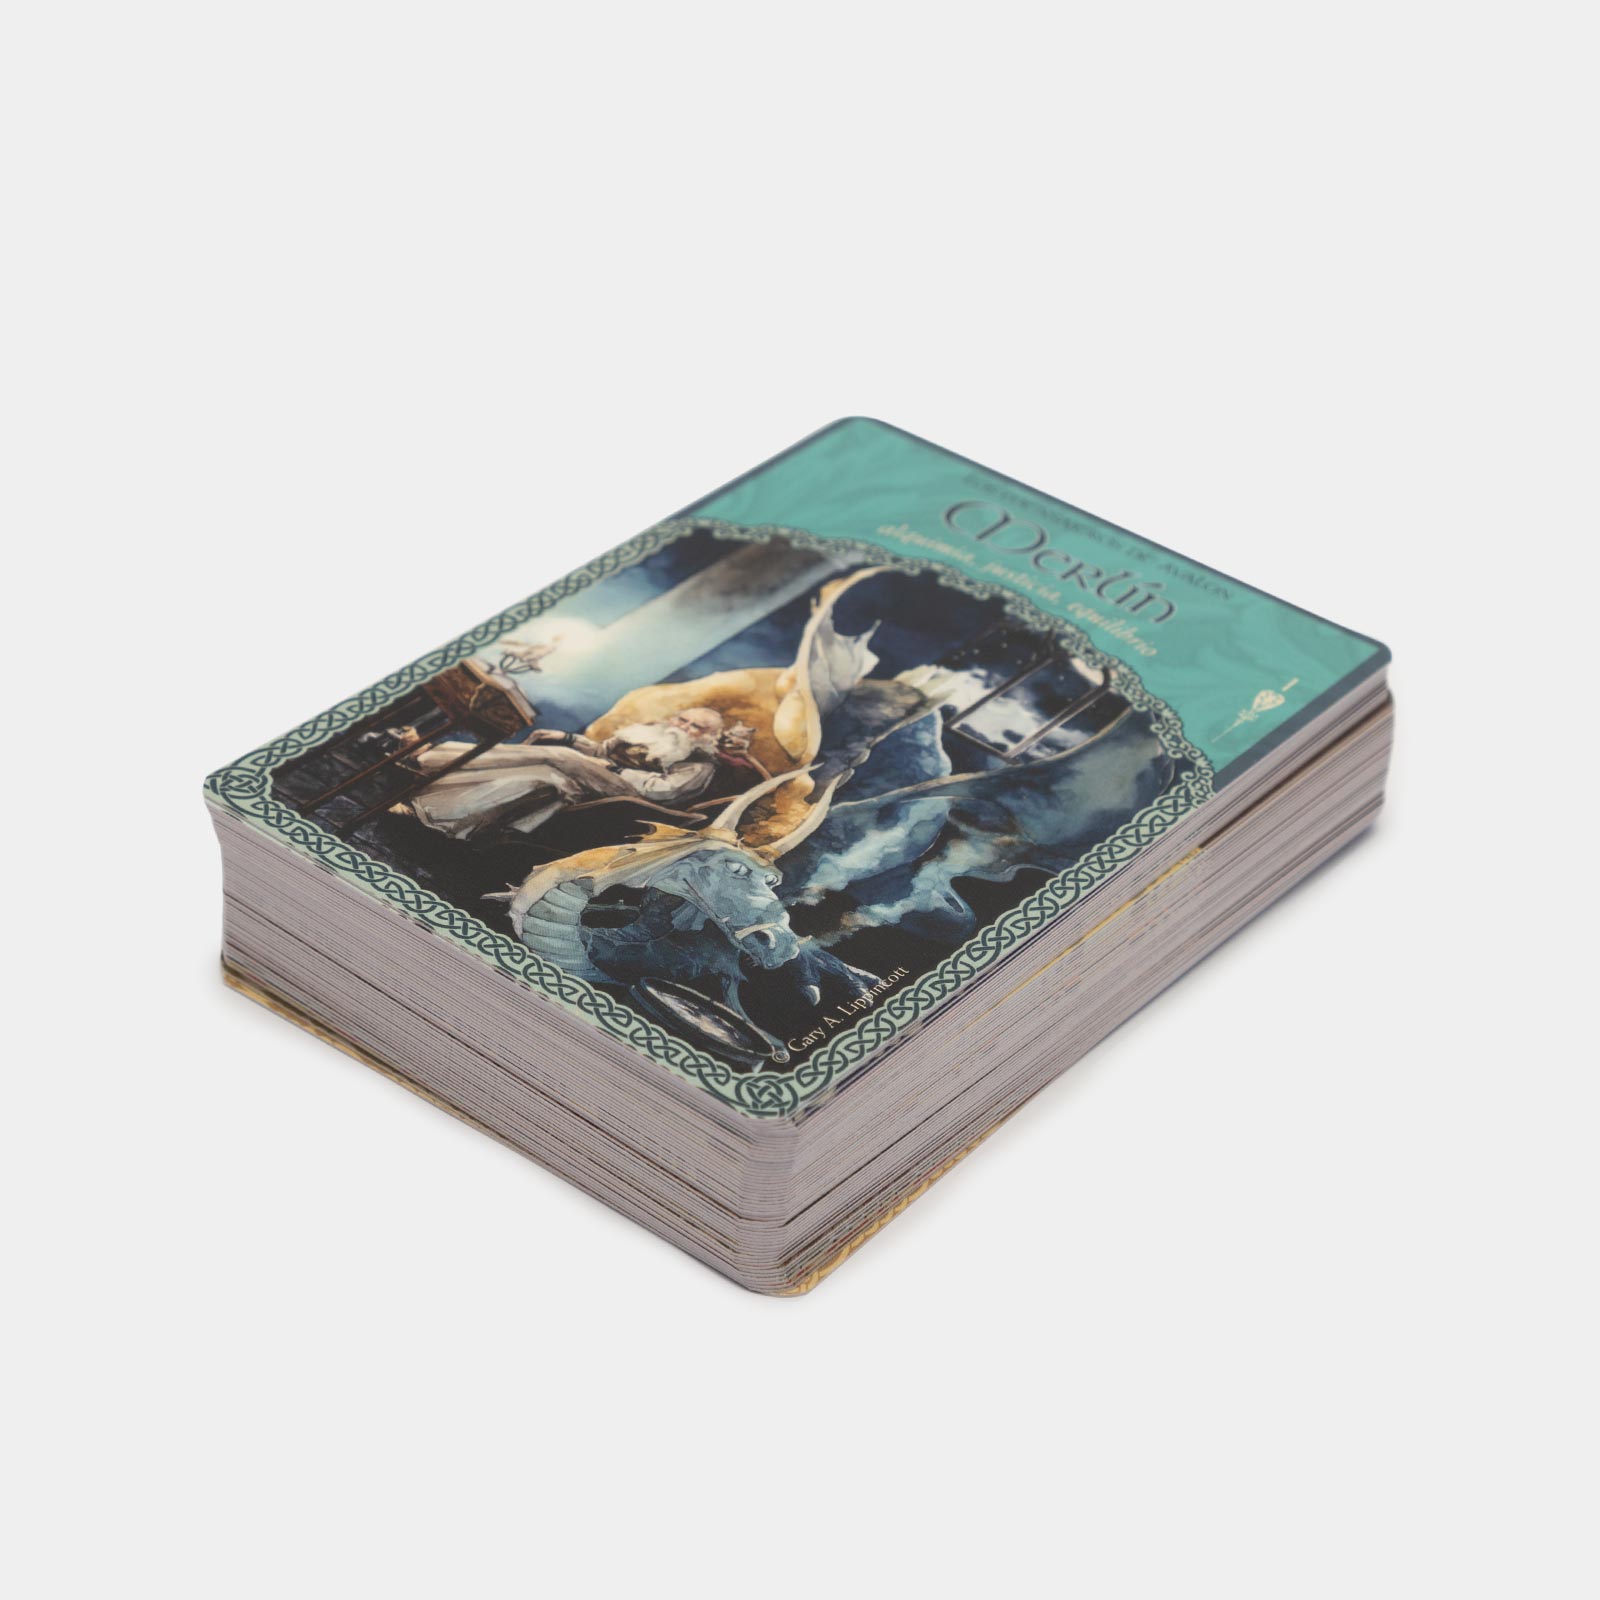 La Sabiduría de Ávalon: 52 cartas oráculo y libro guía by Colette